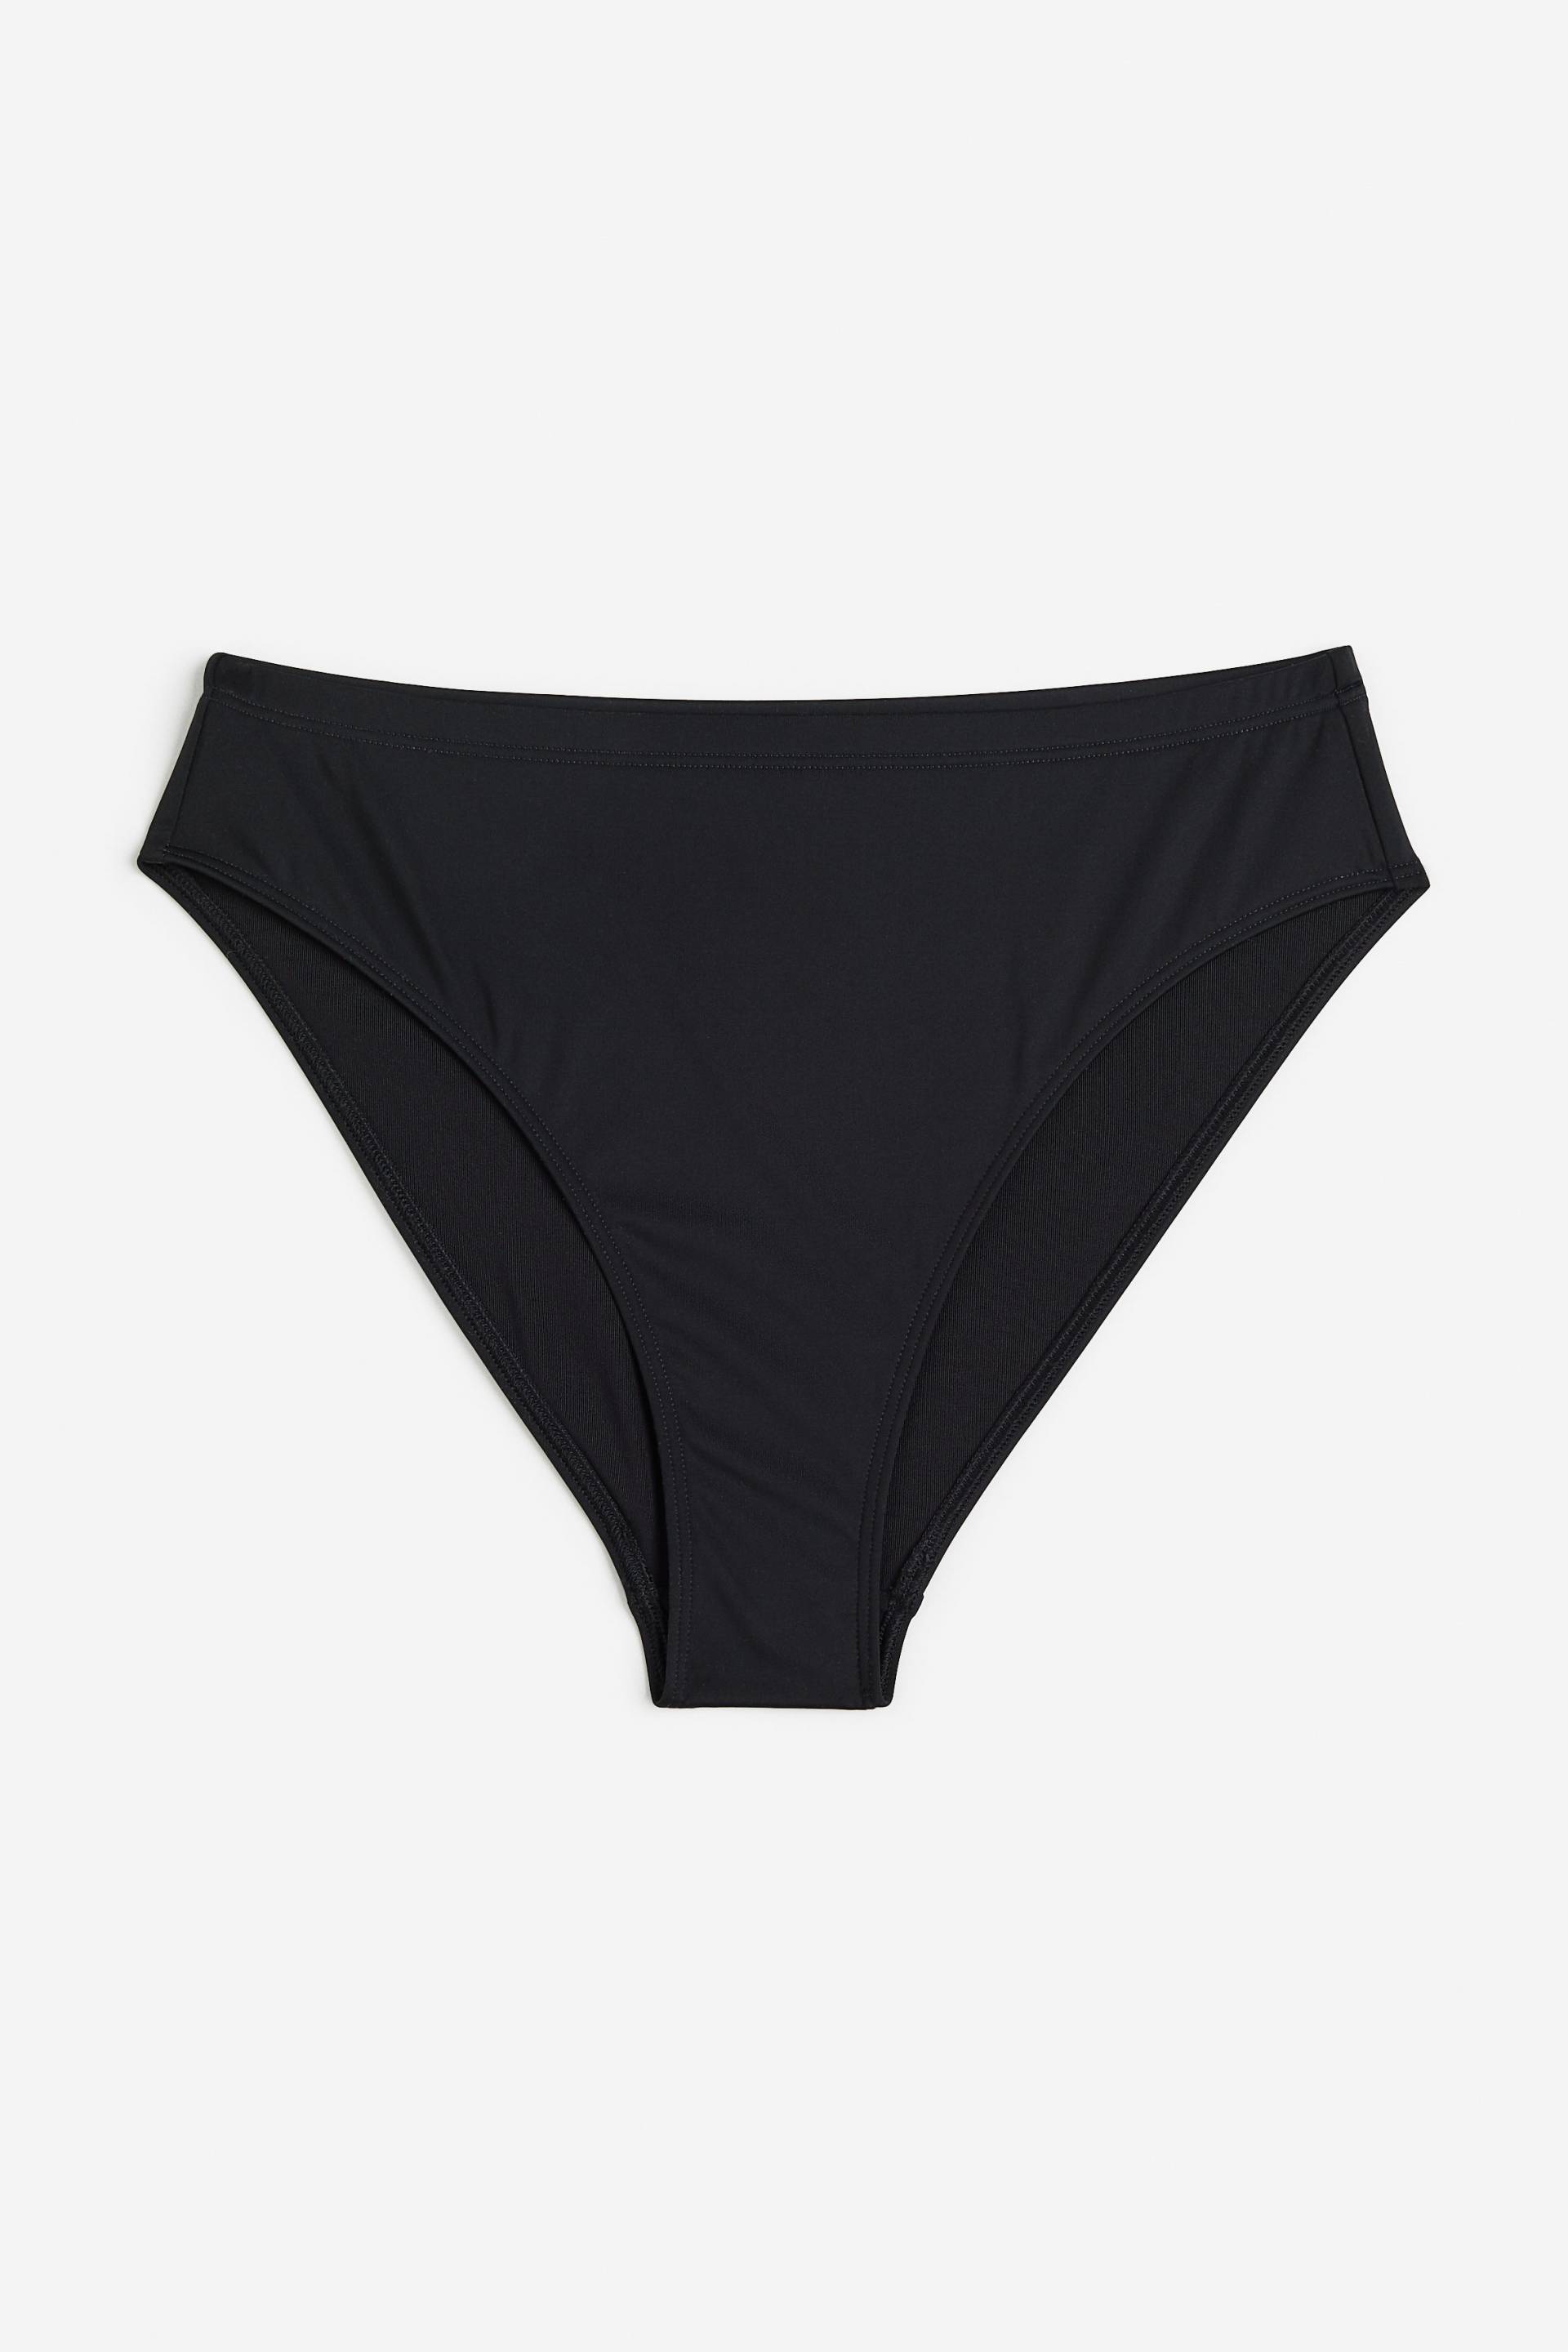 H&M Sportbikinihose Schwarz, Bikini-Unterteil in Größe S. Farbe: Black von H&M